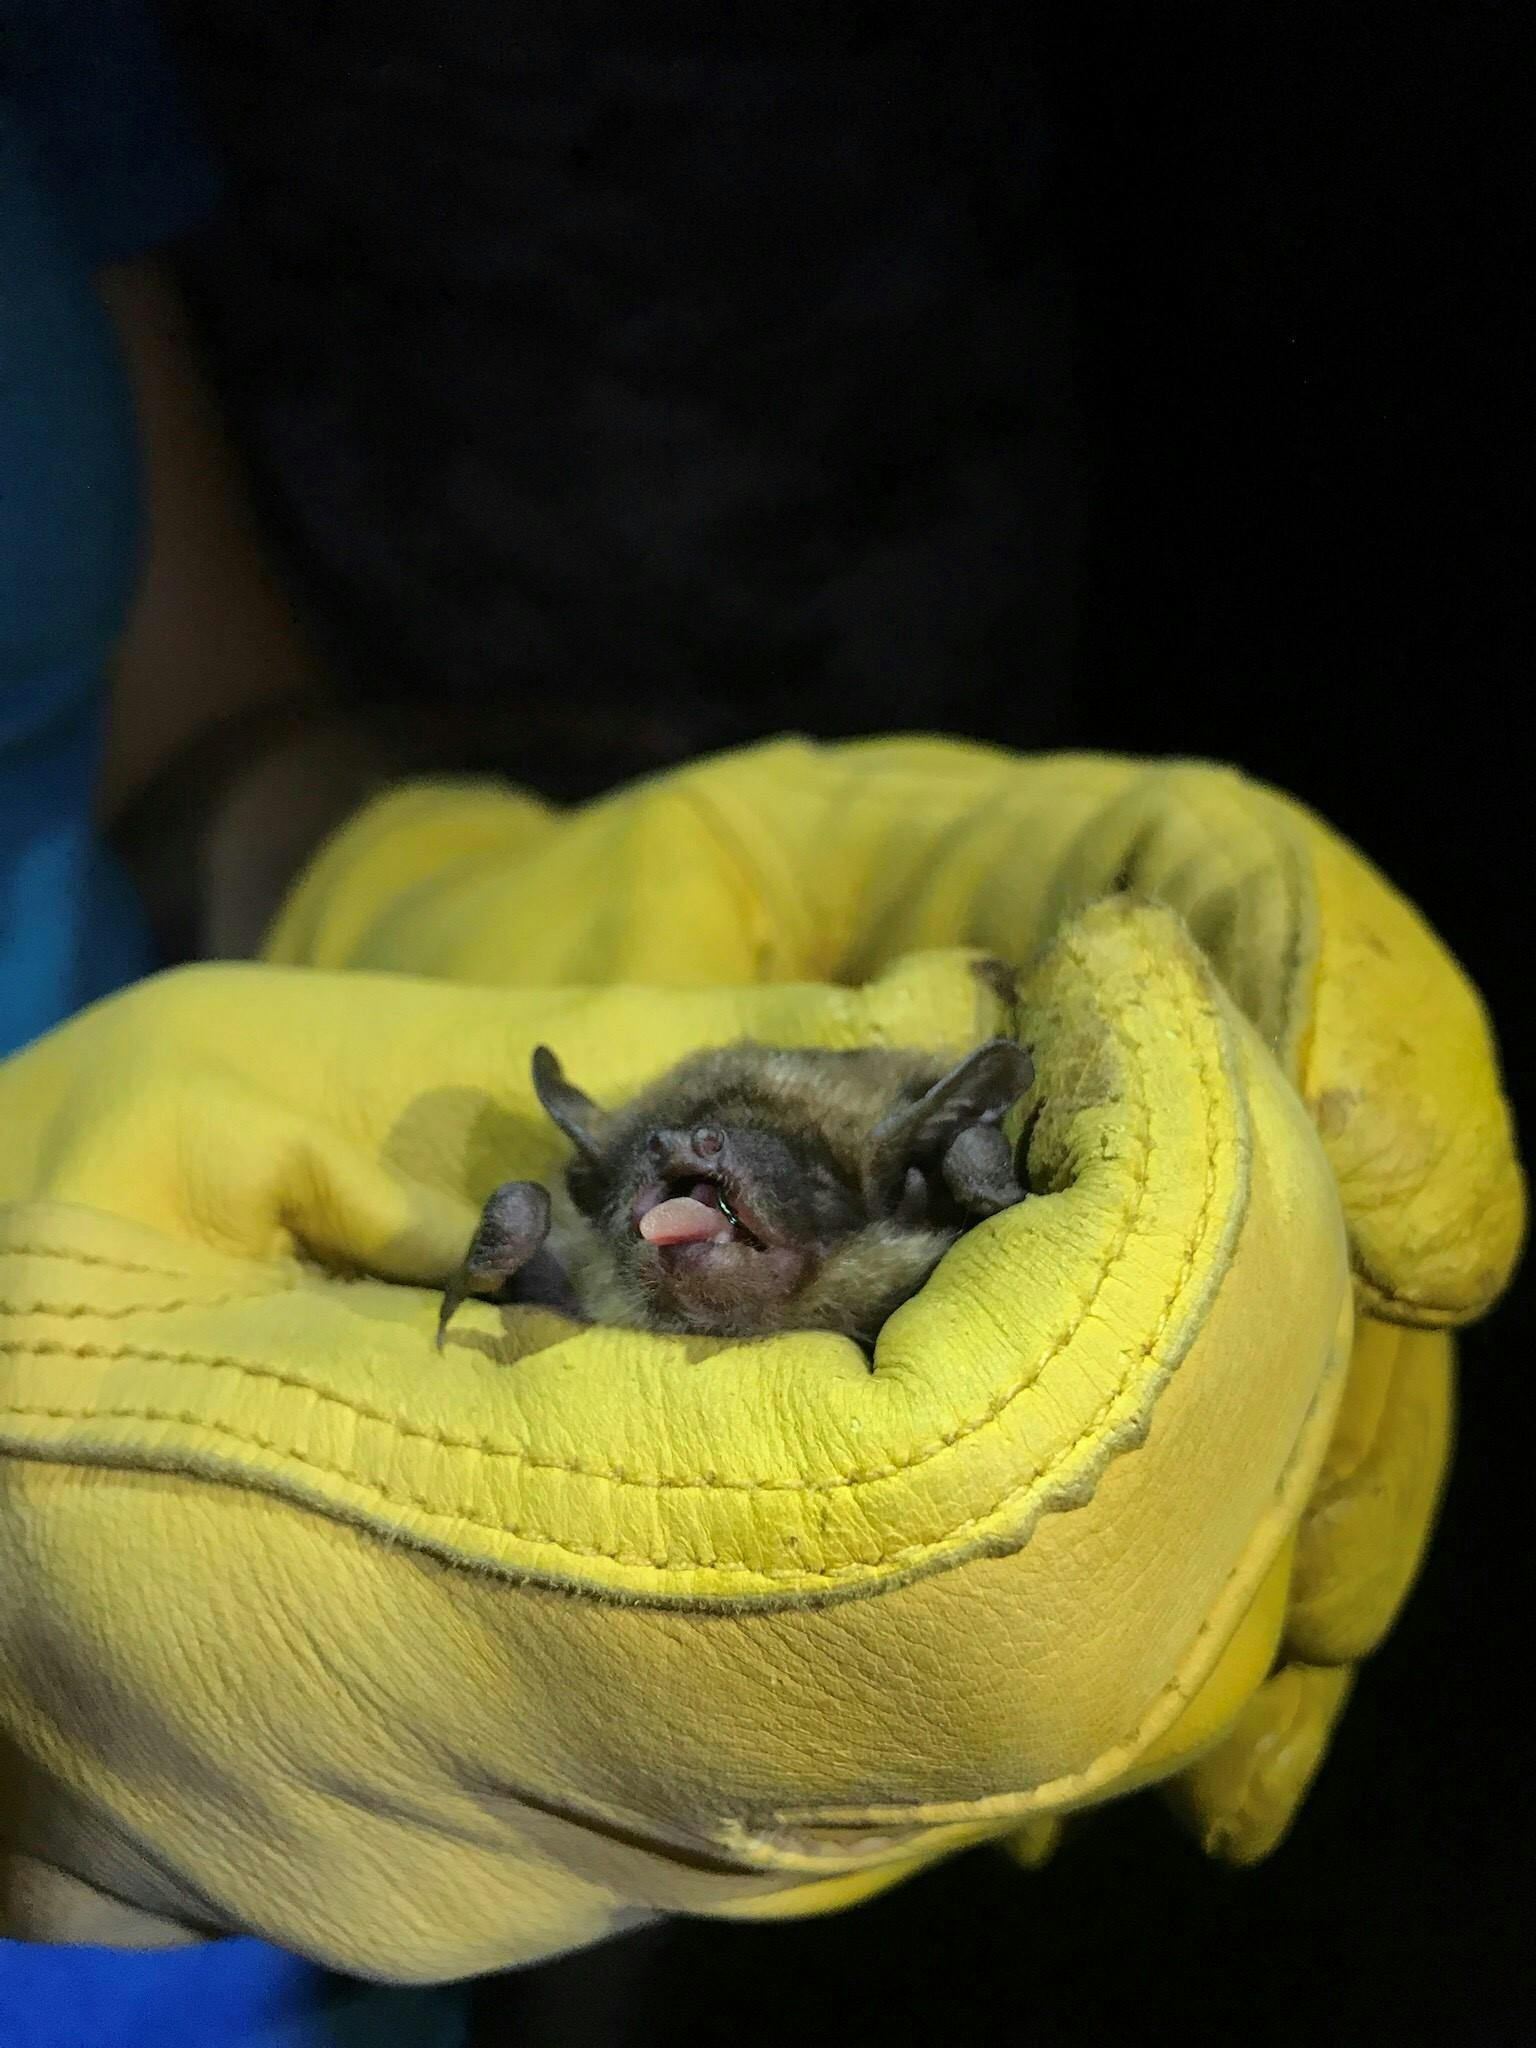 Bats of New Jersey